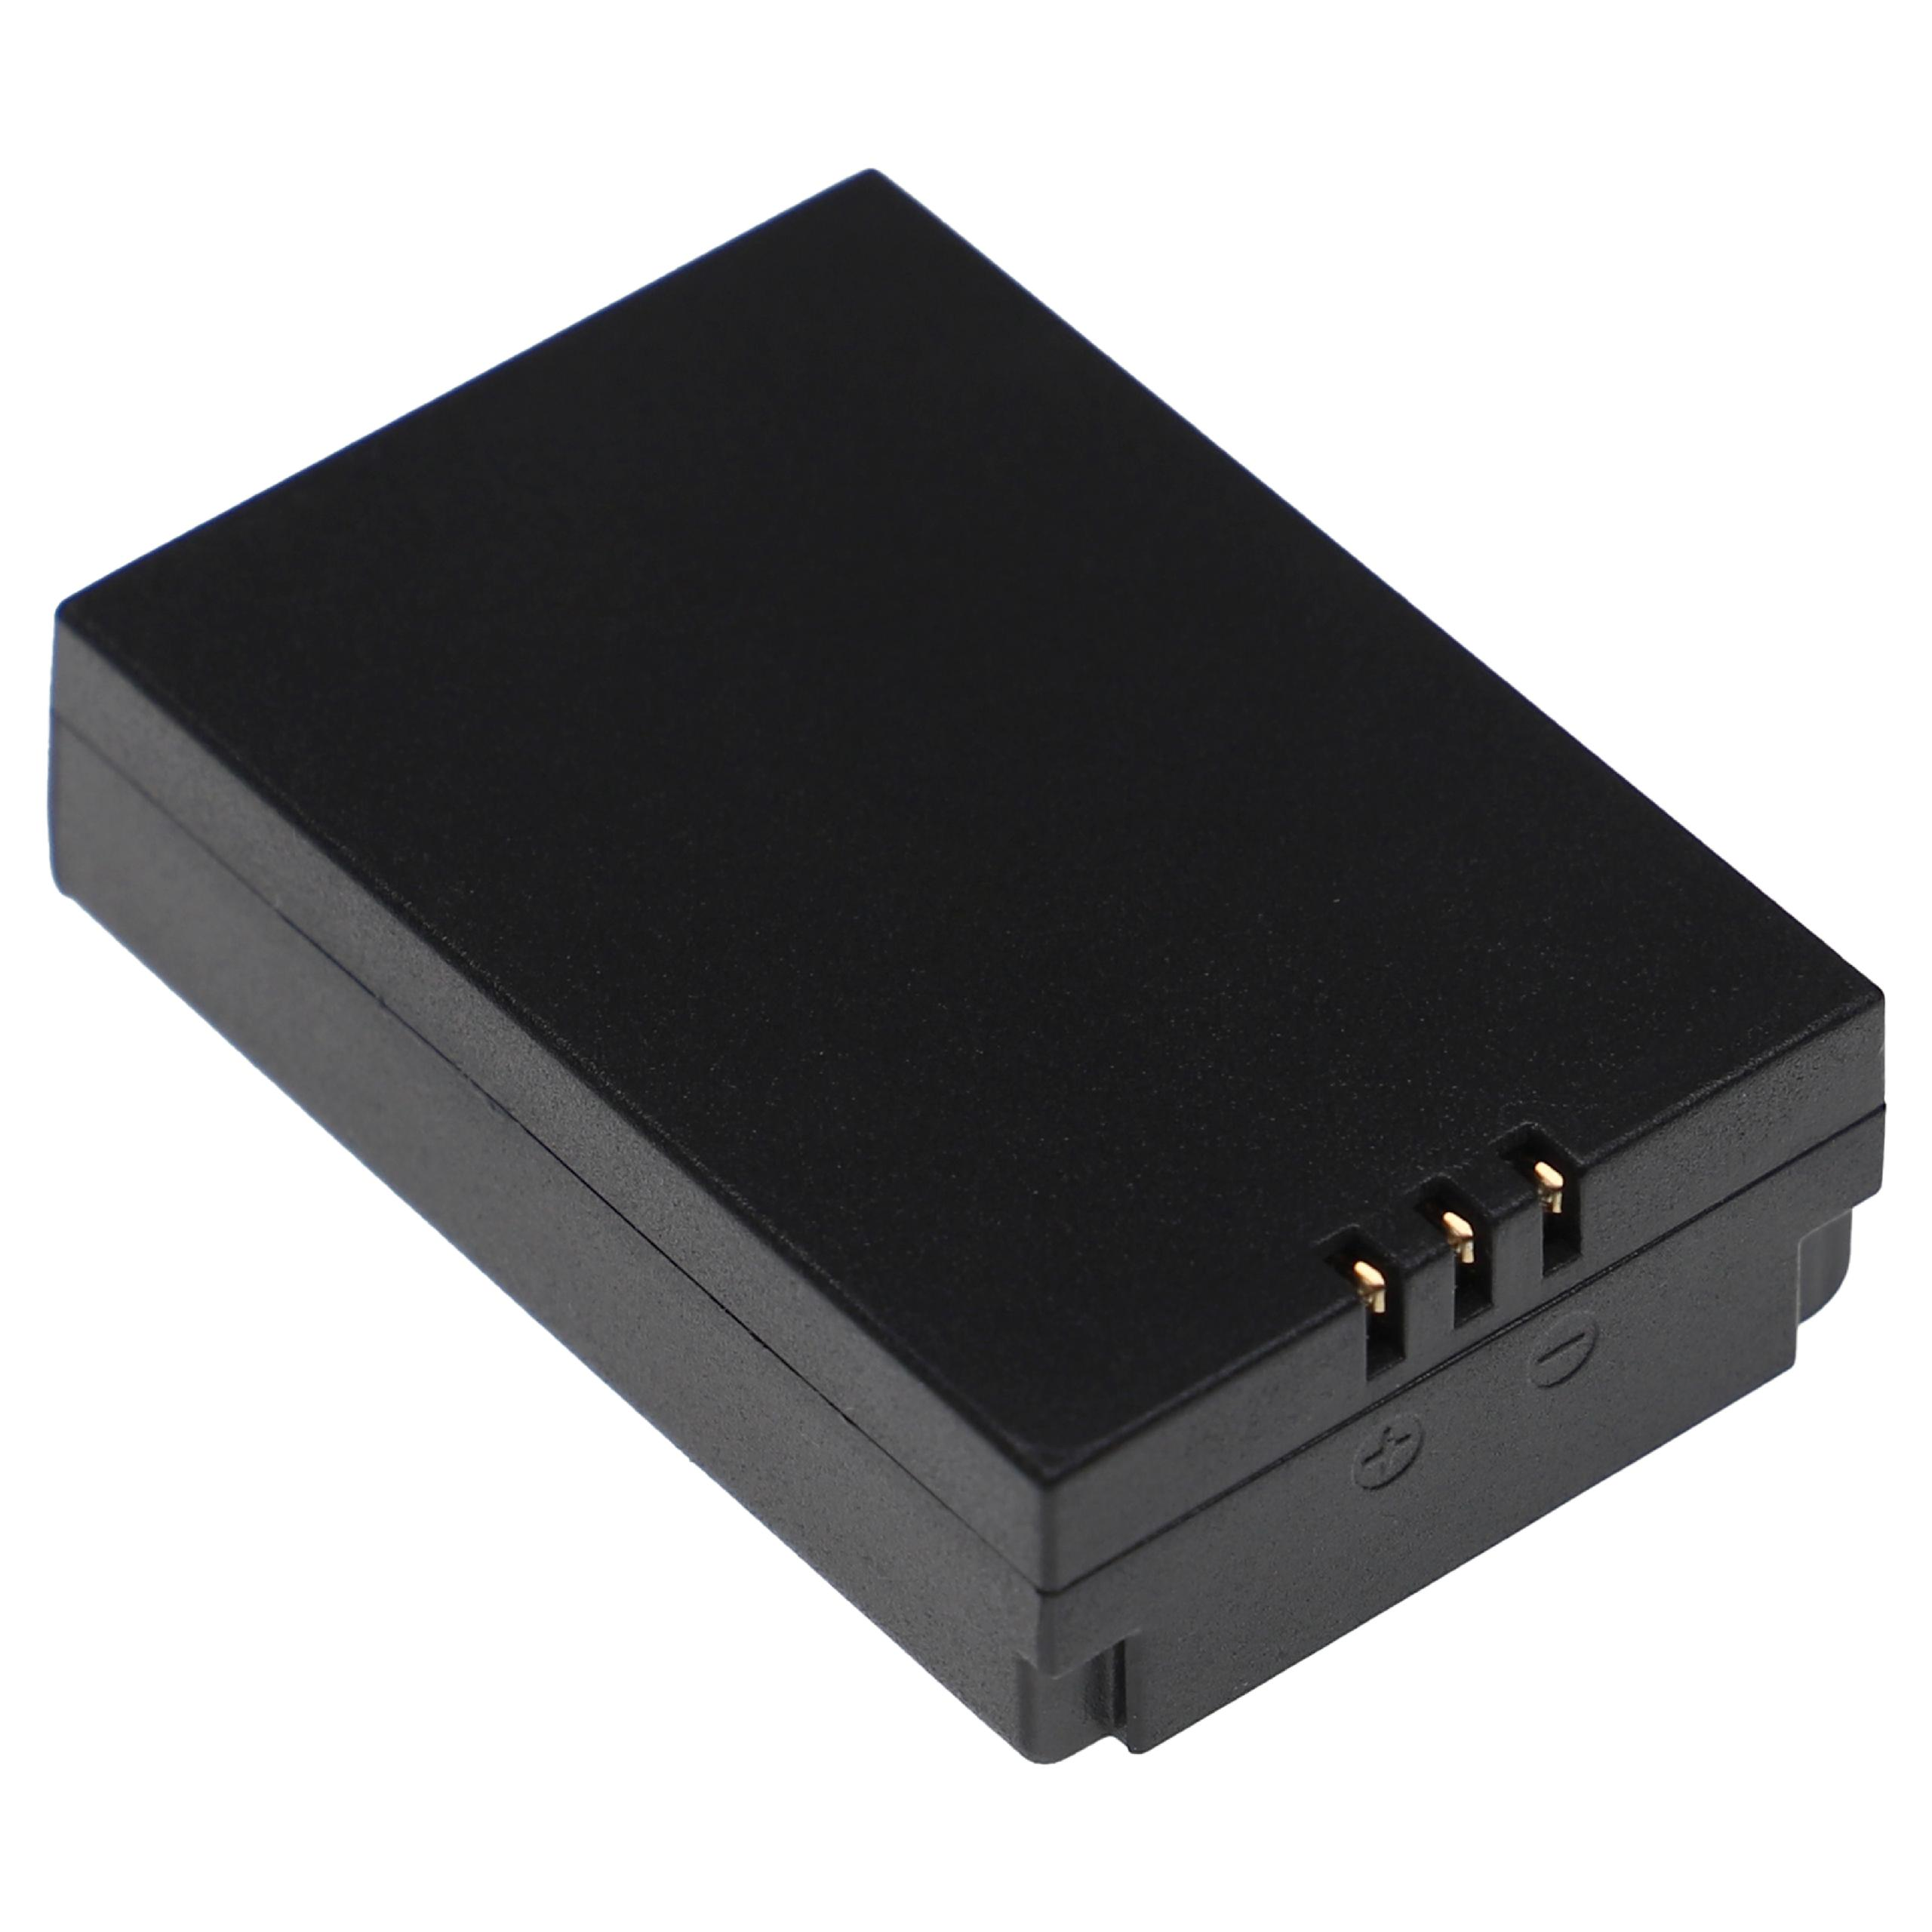 VHBW kompatibel mit Li-Ion DT-9881 Akku DT-9850M, CEM 1200 DT-9883M, DT-9880, DT-9881M, DT-9880M, Volt, Messgerät, - 7.4